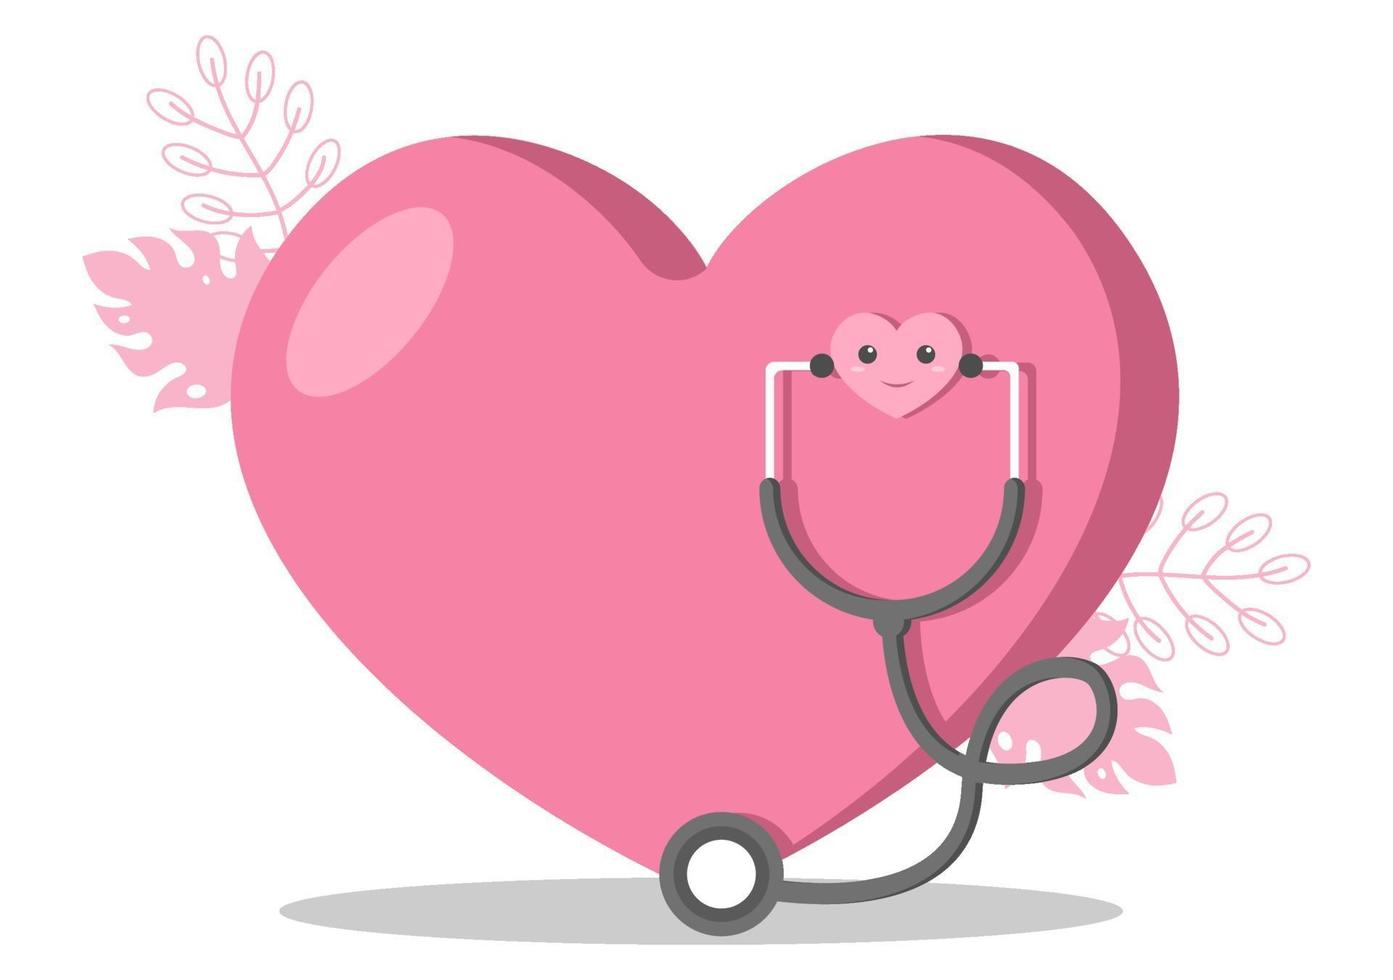 Symbole für Gesundheits- und medizinische Geräte in Form eines Herz-Illustrationspakets zum Dank an alle medizinischen Assistenten für den Kampf gegen das Coronavirus und die Rettung vieler Leben vektor